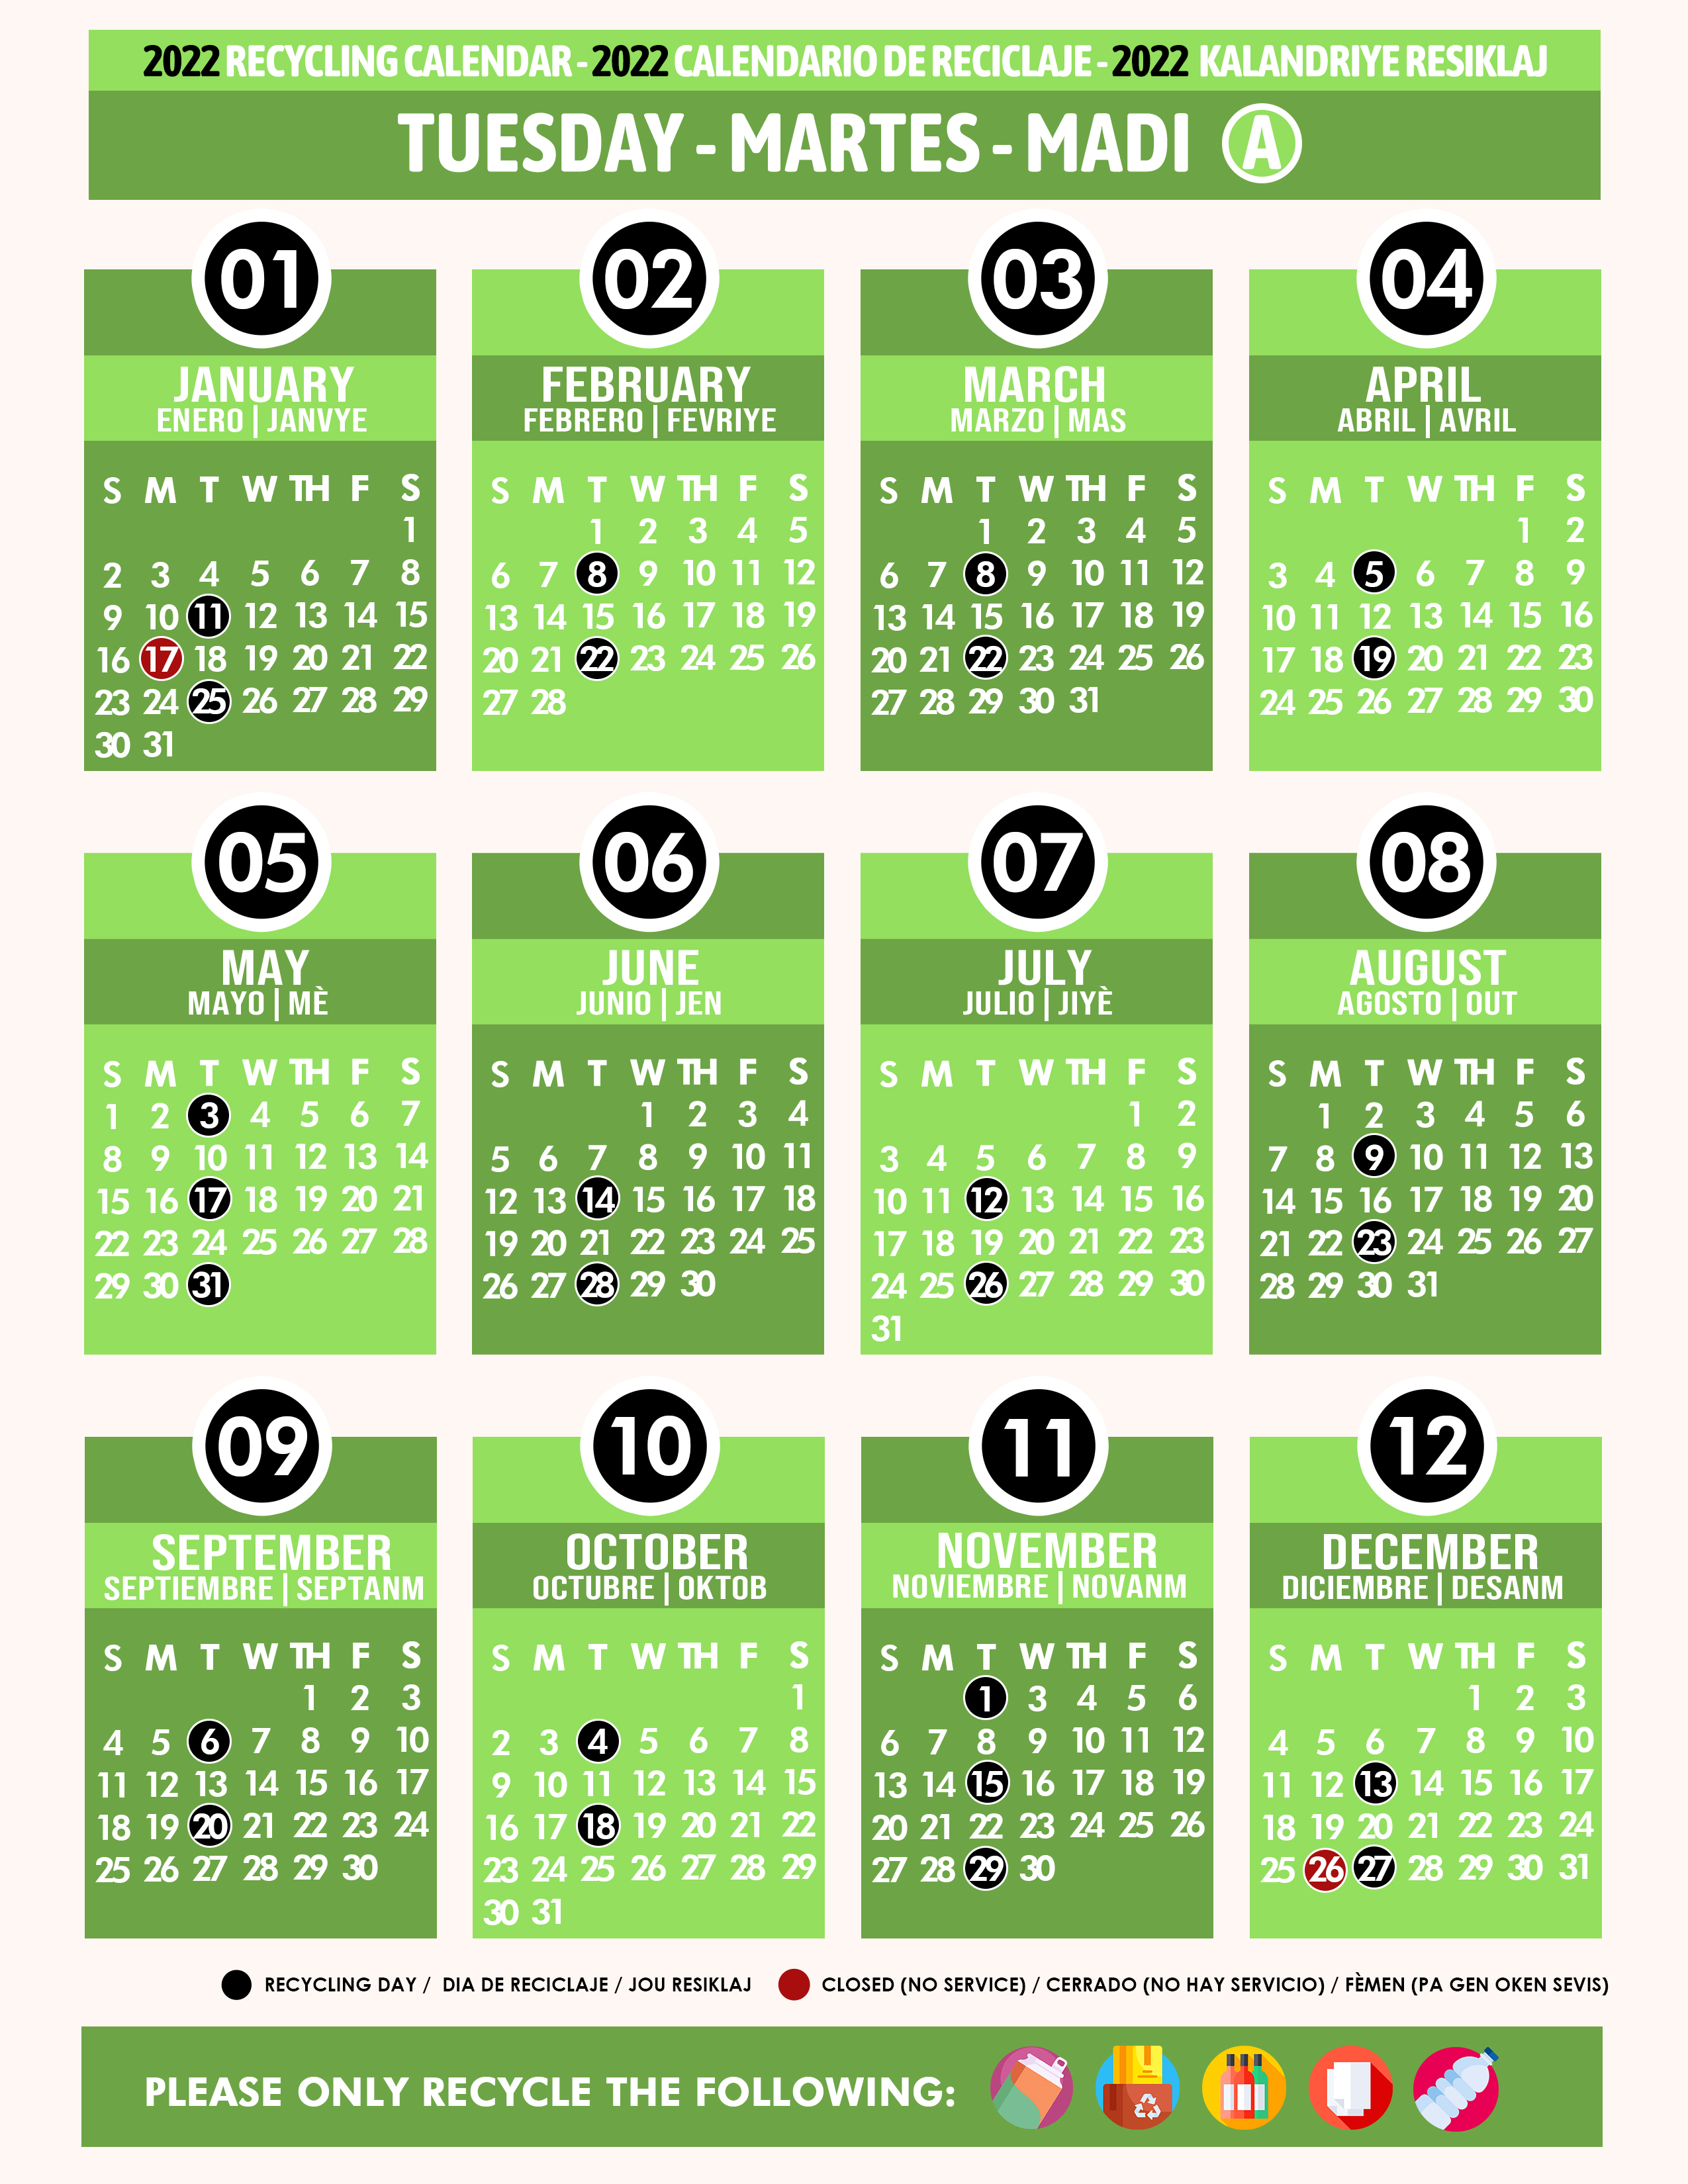 Miami Dade Recycling Calendar 2022 Recycling Calendar 2022 Tuesday A Green - Miami